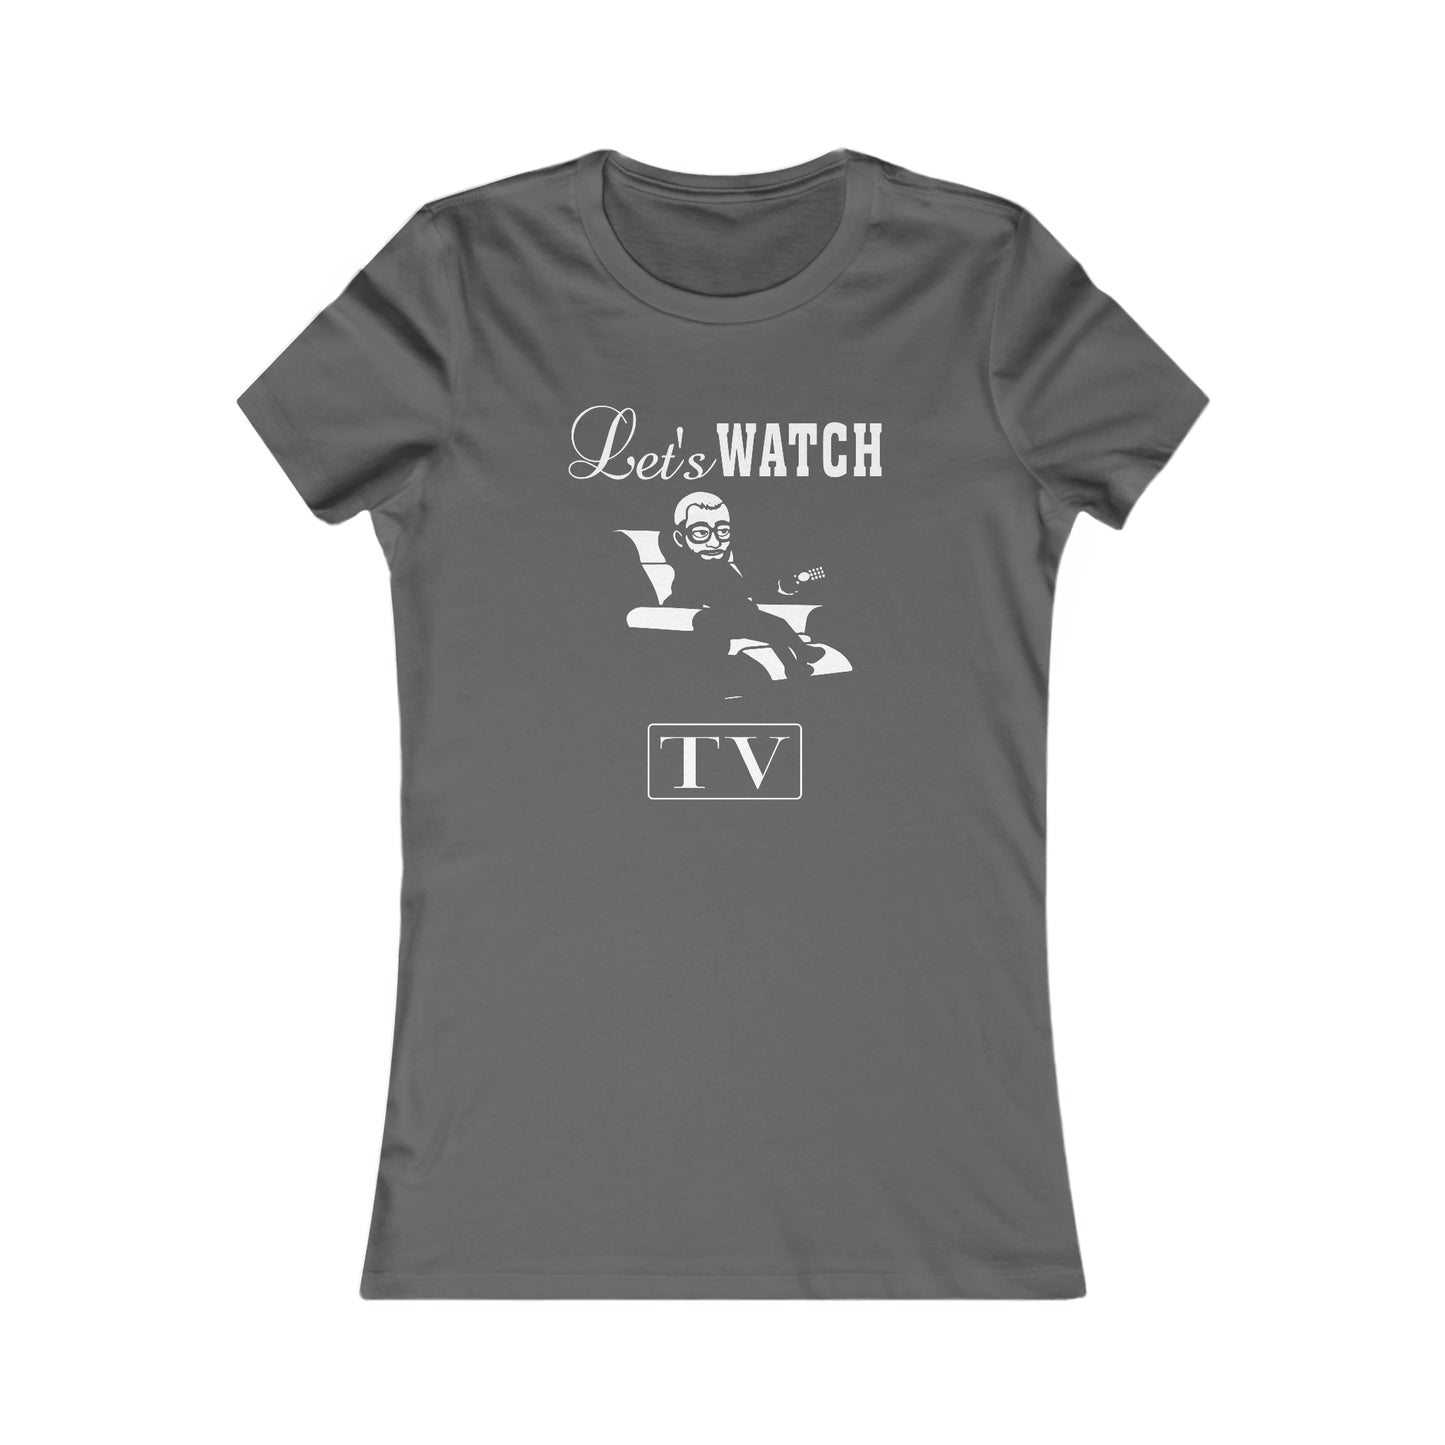 Jay Watch Let's Watch TV - Women's Favorite Tee